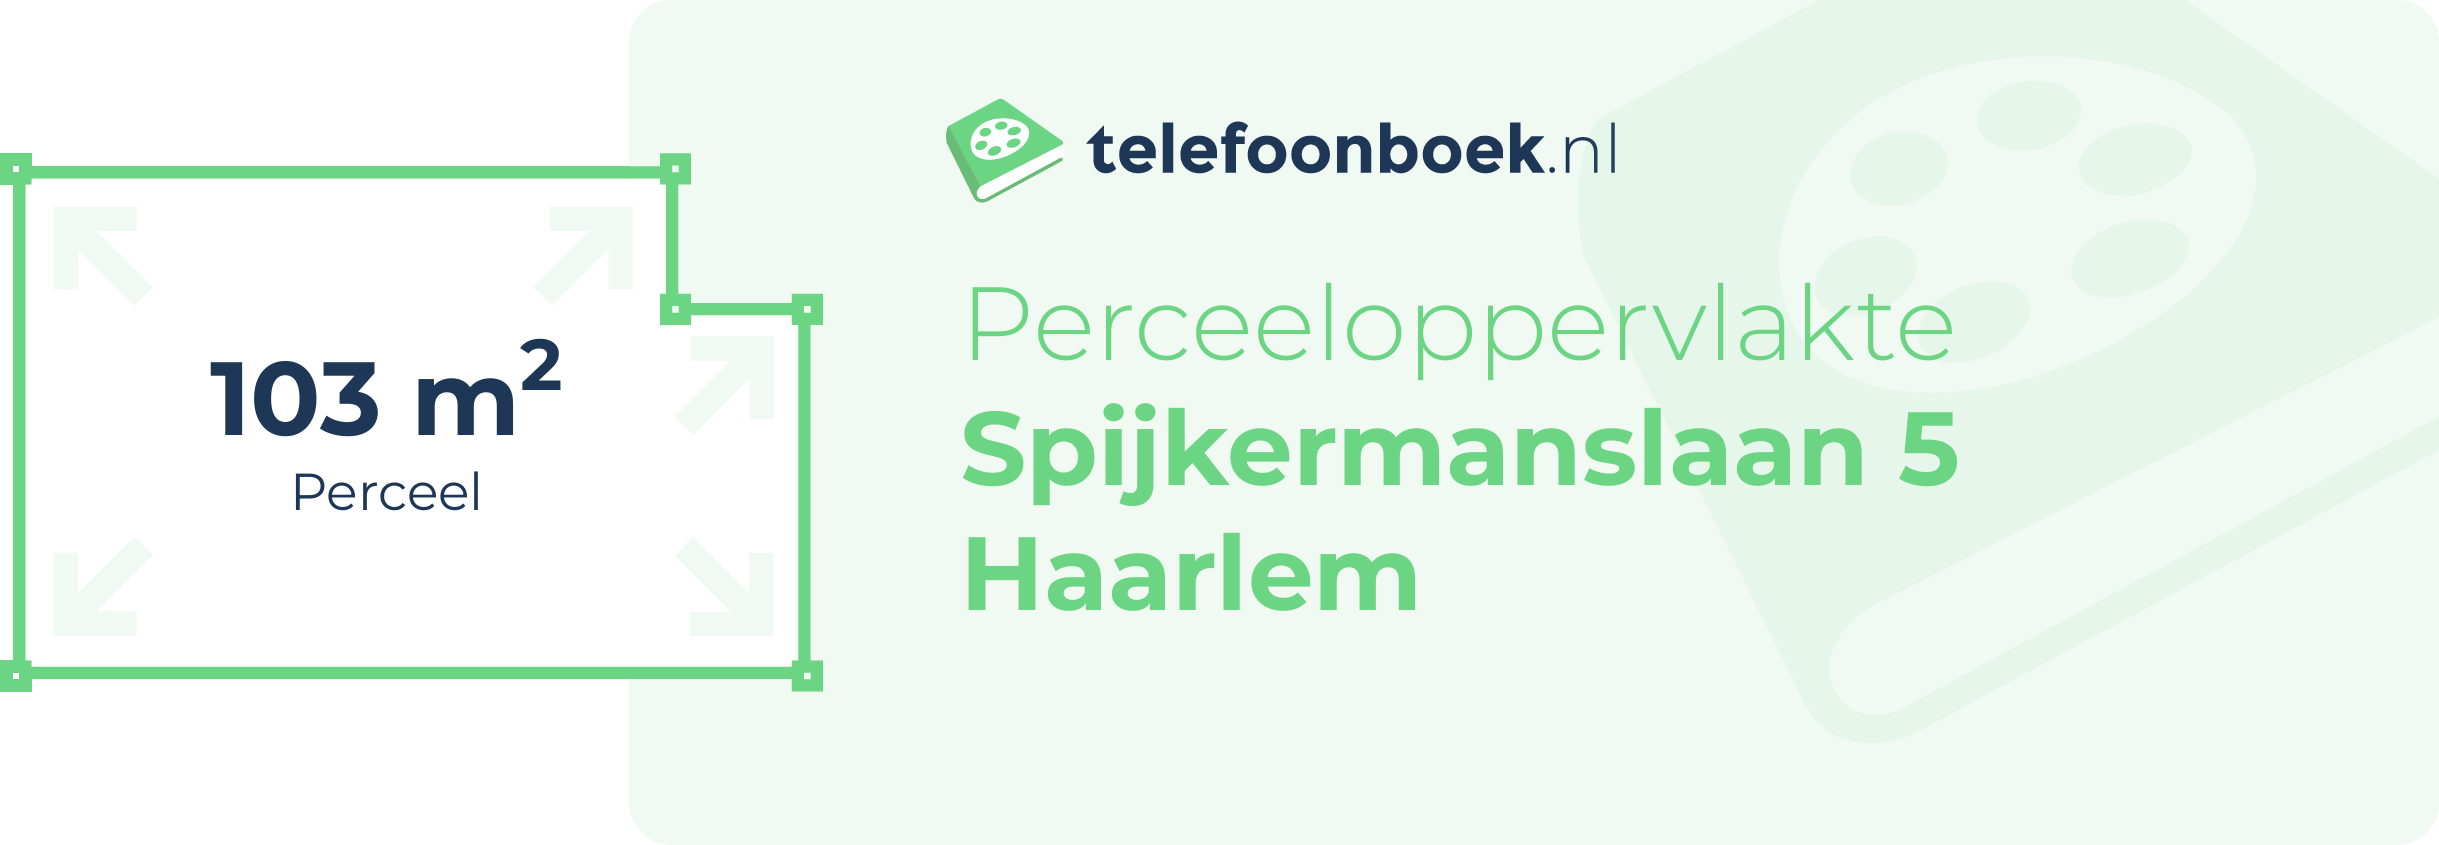 Perceeloppervlakte Spijkermanslaan 5 Haarlem